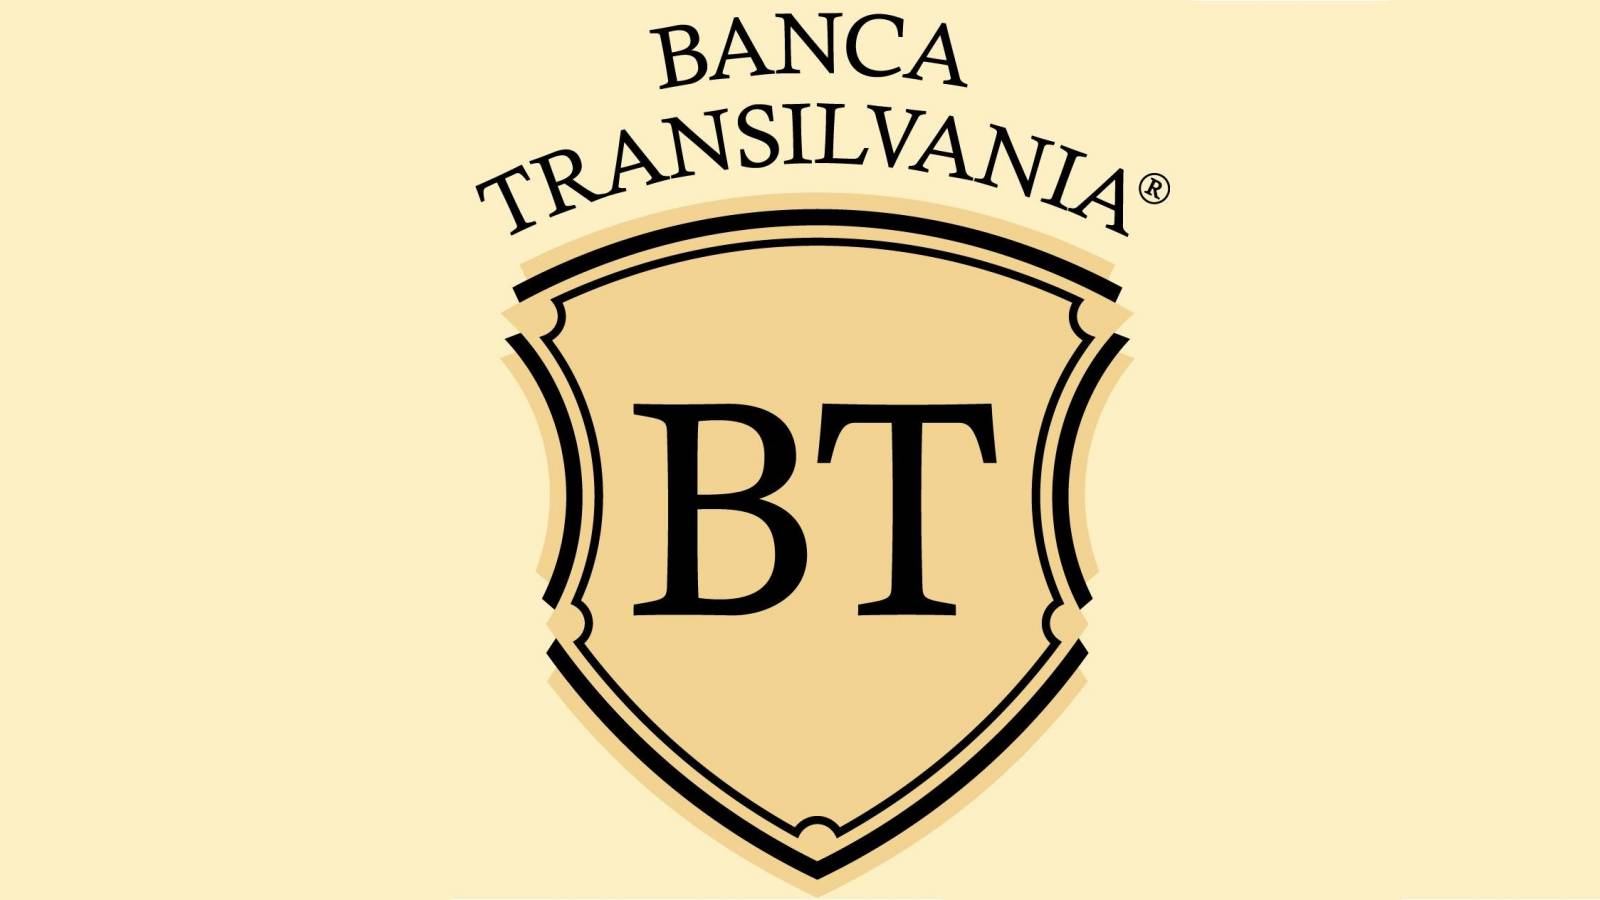 PREMIERE BANCA Transilvania virallisesti ilmoitettu kaikille romanialaisille asiakkaille